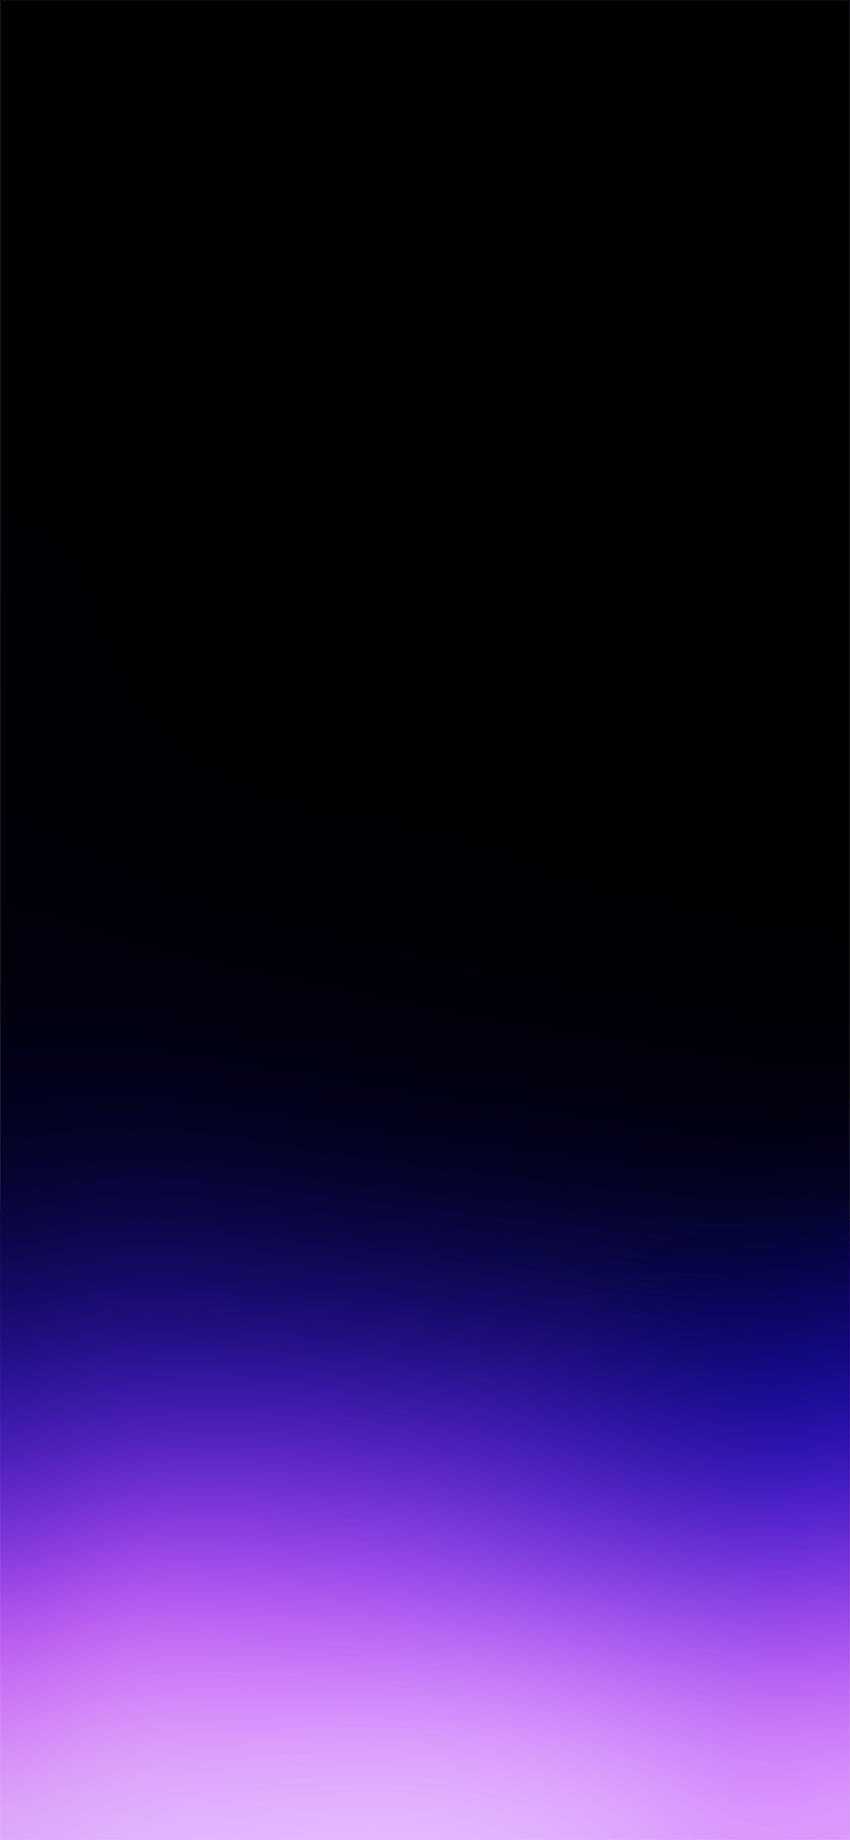 カラフルなOLED - 、コウモリのカラフルなOLEDの背景、黒のグラデーションiPhone HD電話の壁紙